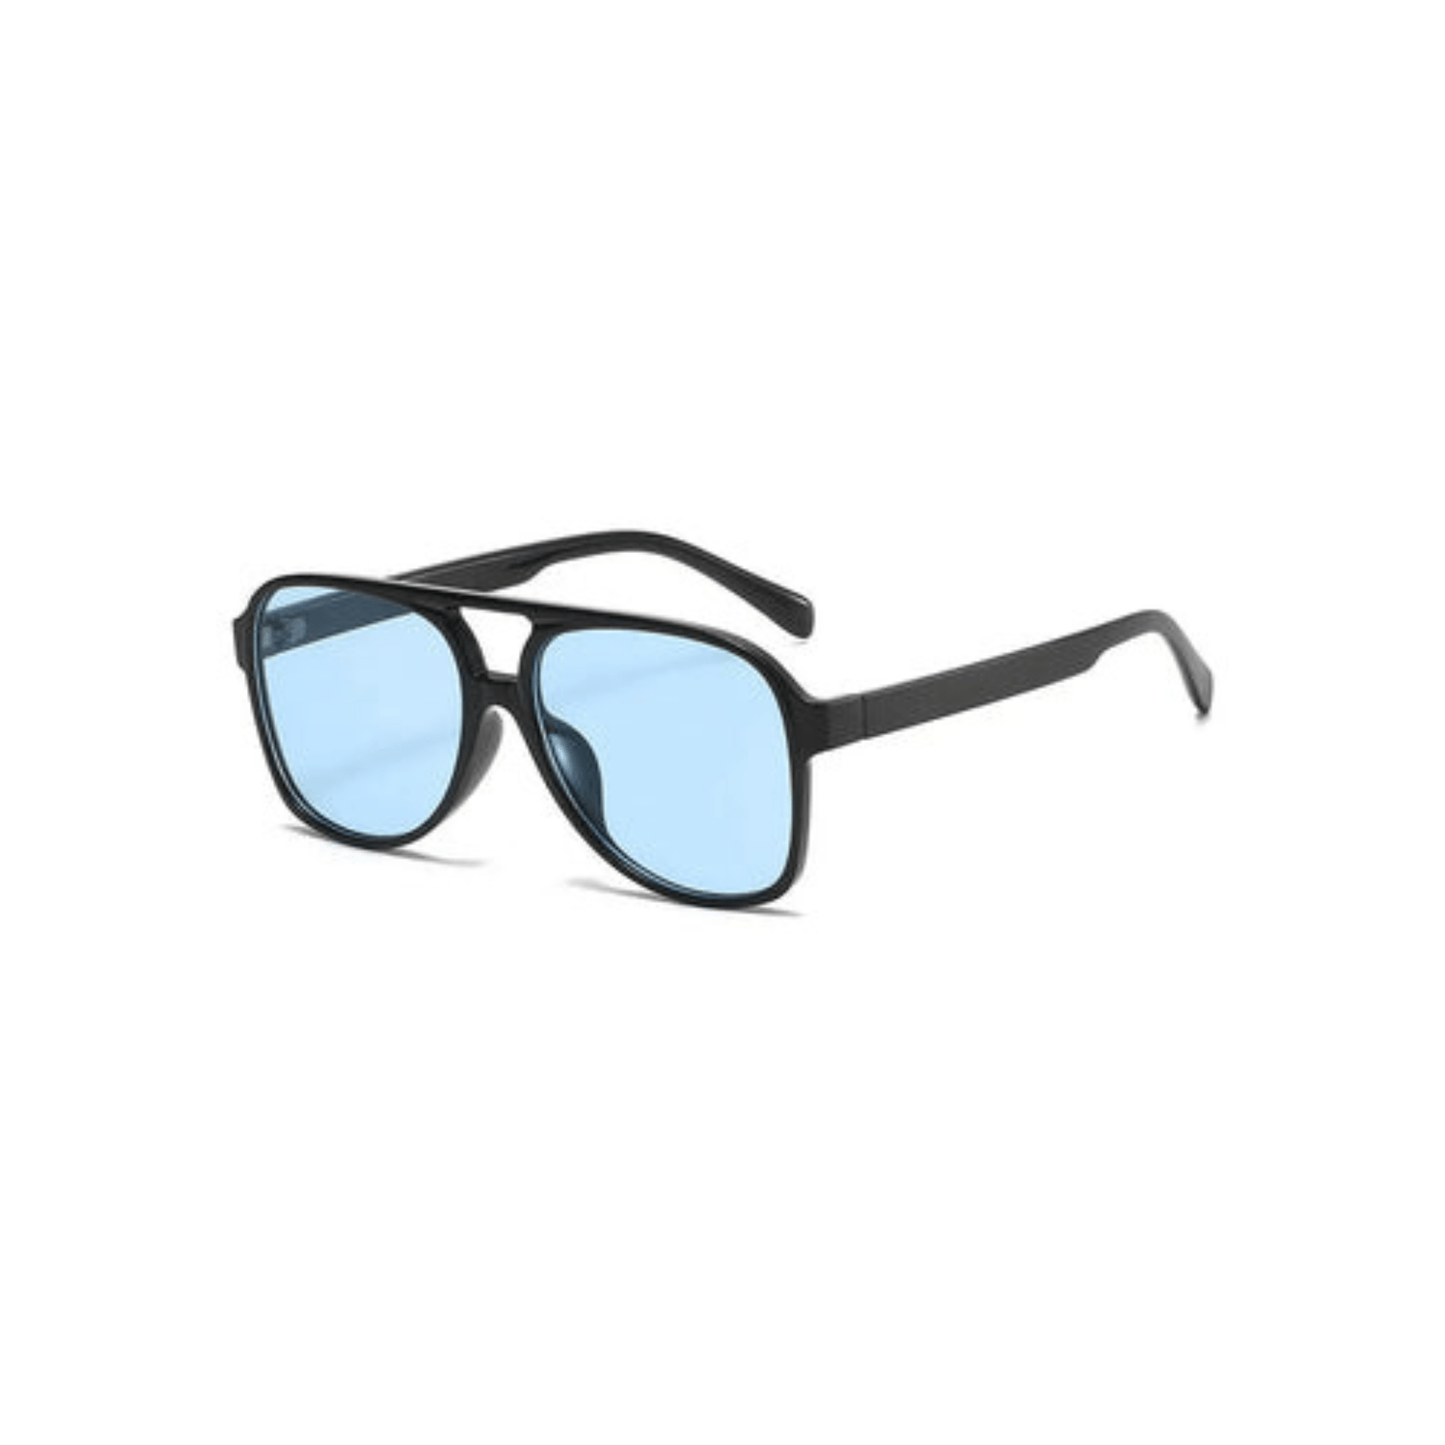 aviator sunglasses blue lens black frame desert festival outfit